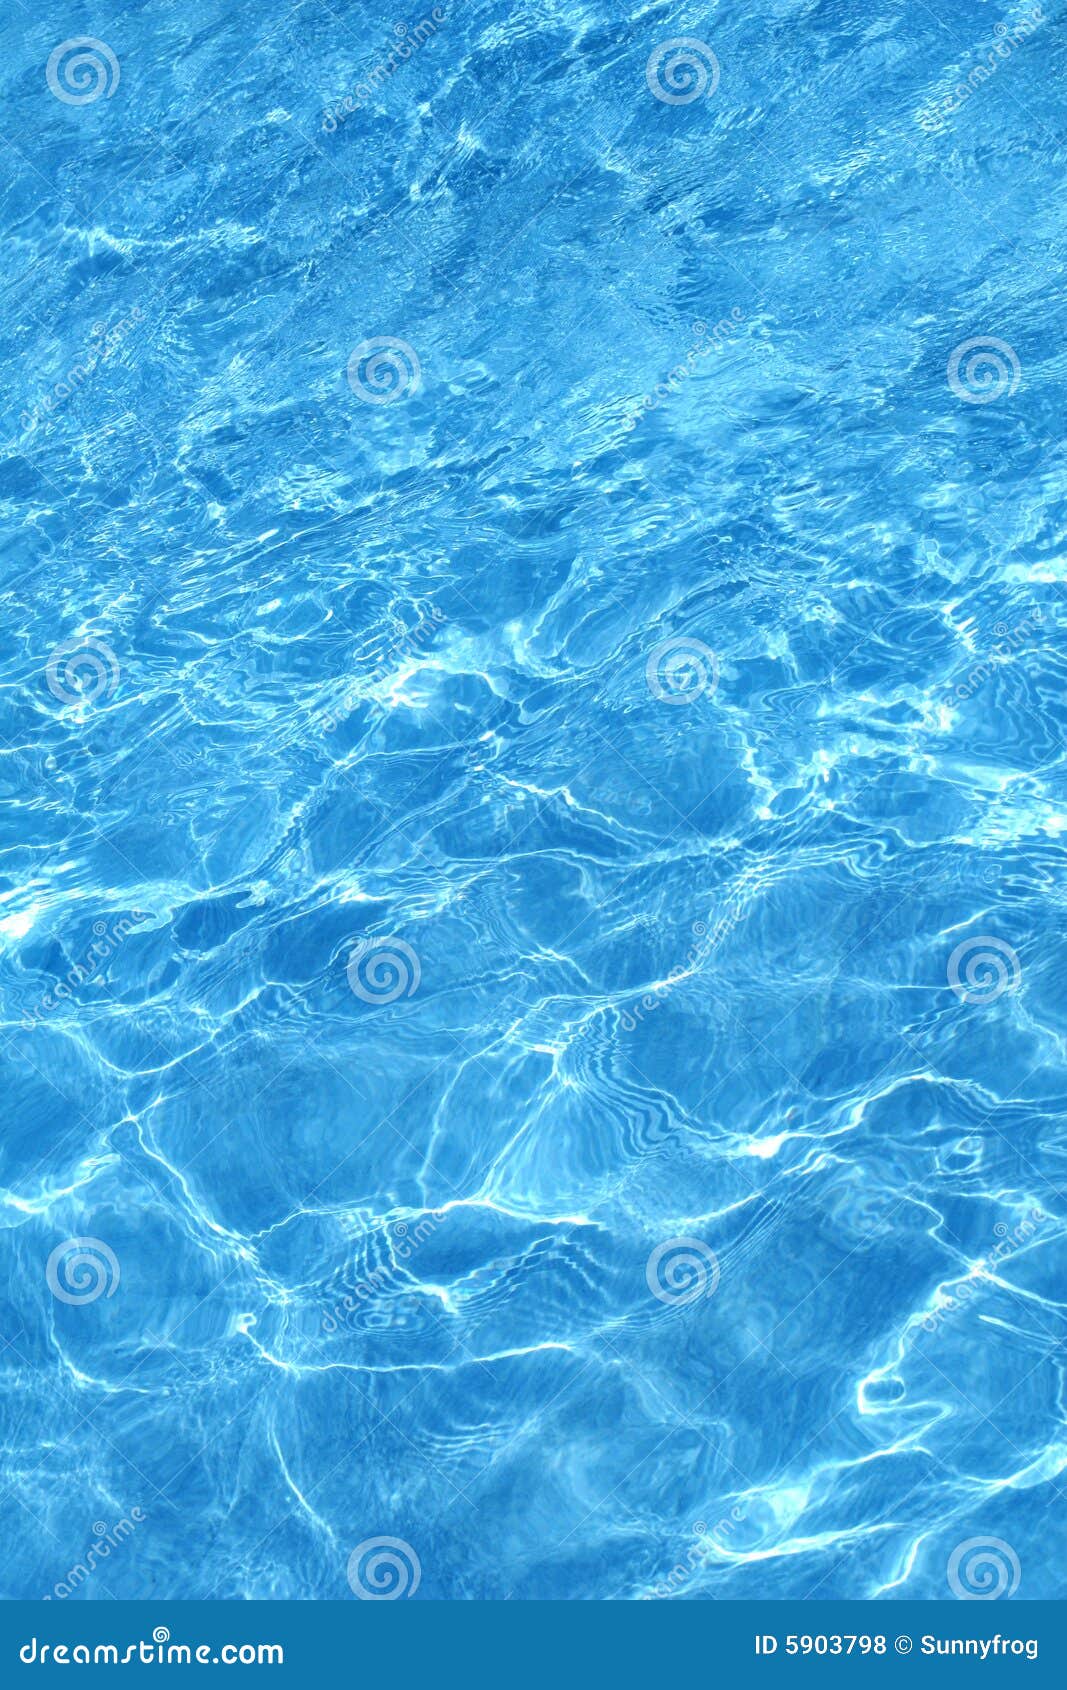 blue pellucid water